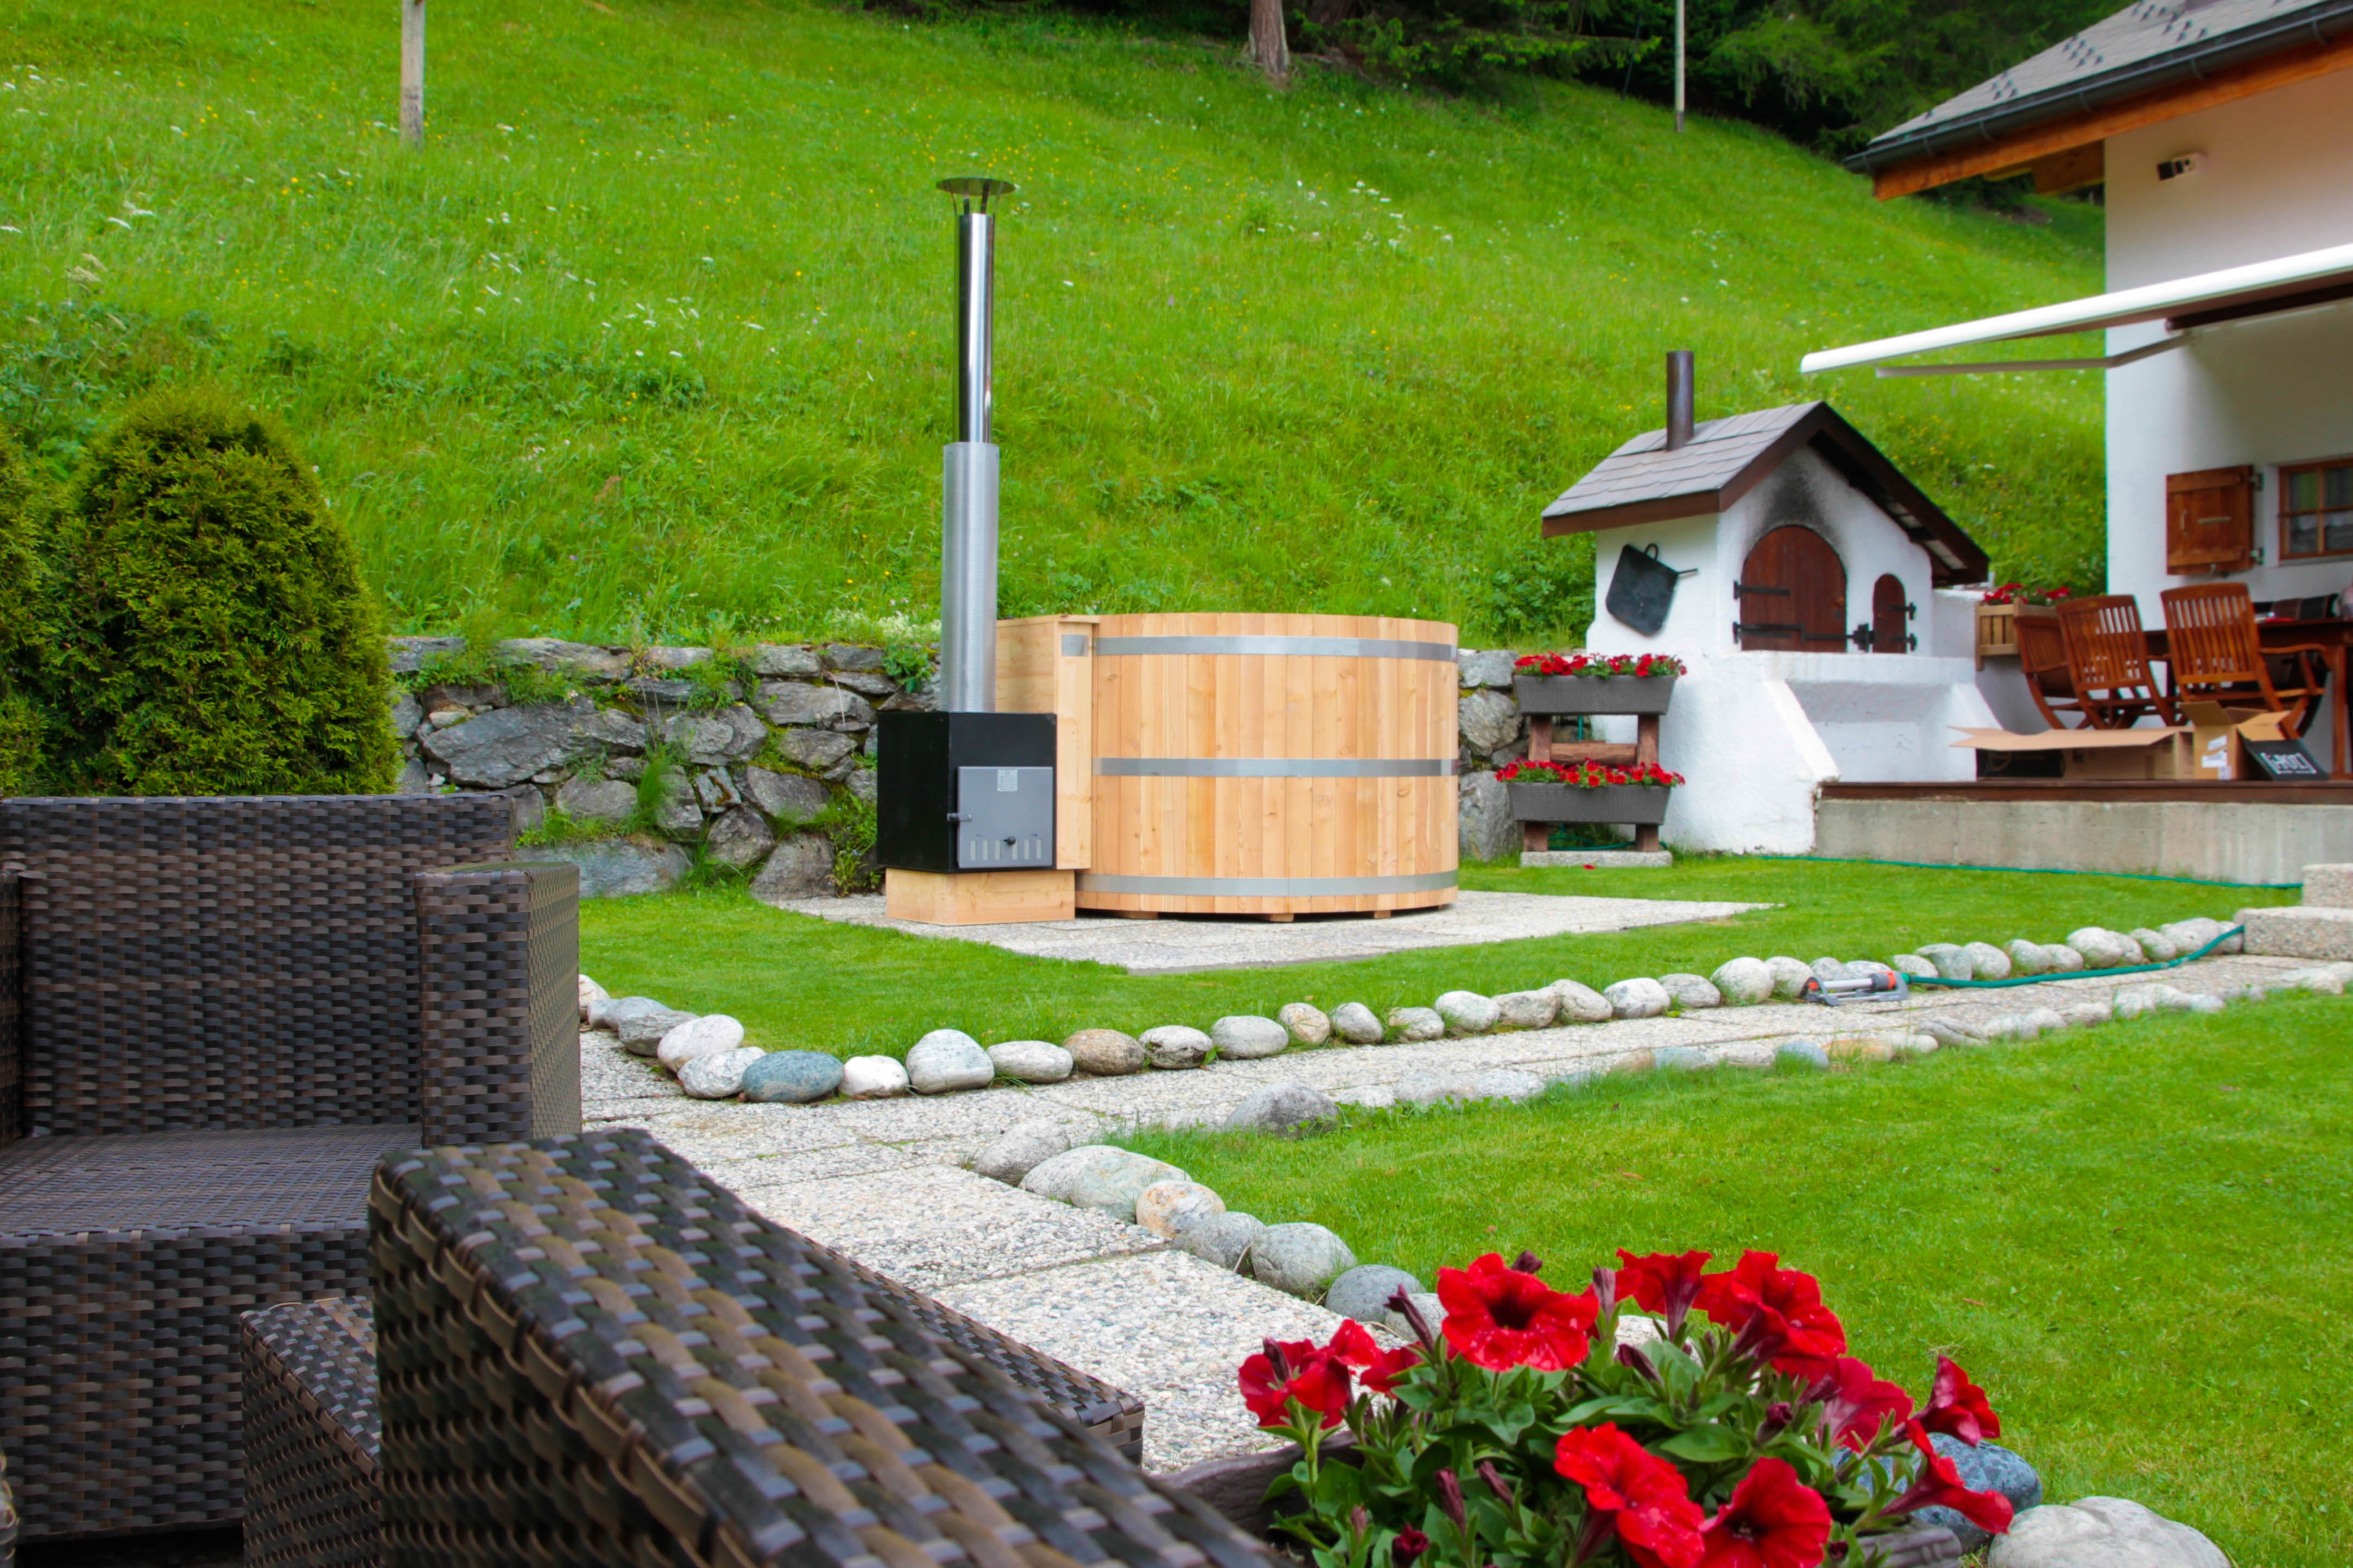 Bilder Saunafass und i-POT Hotpot Schweiz - wellnessunderthesky im wellness-onlineshop